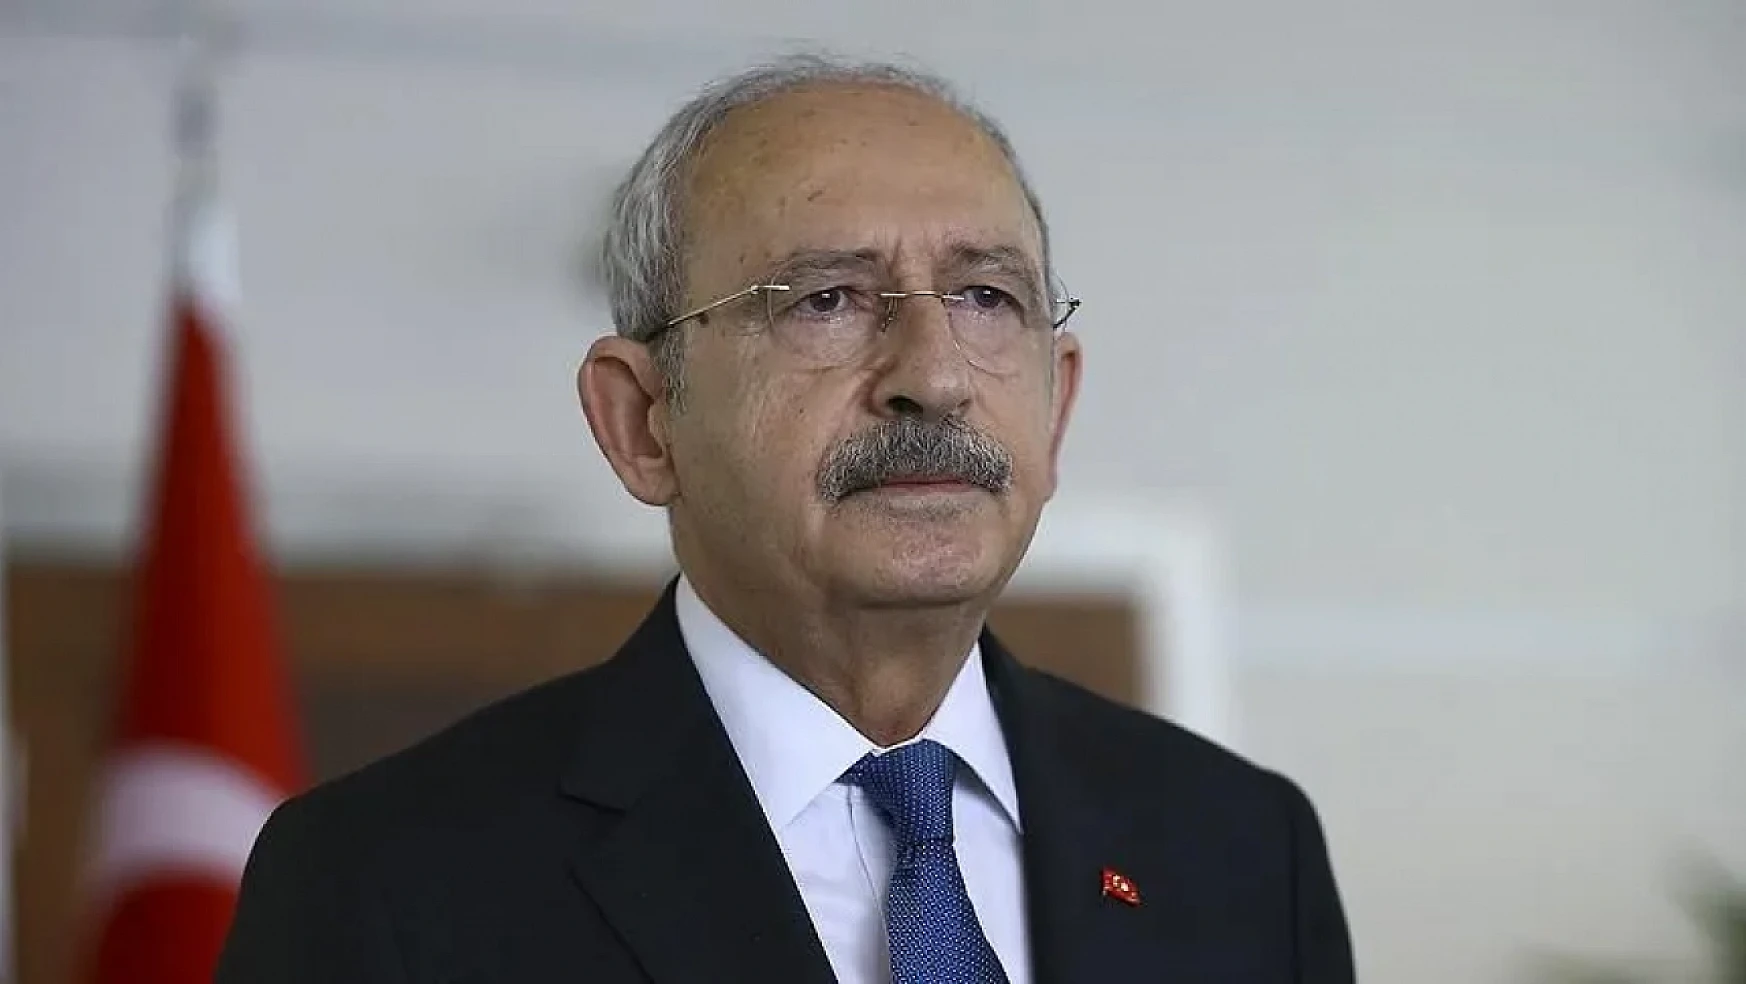 Kılıçdaroğlu, deprem bölgesindeki vatandaşlar hakkında konuştu